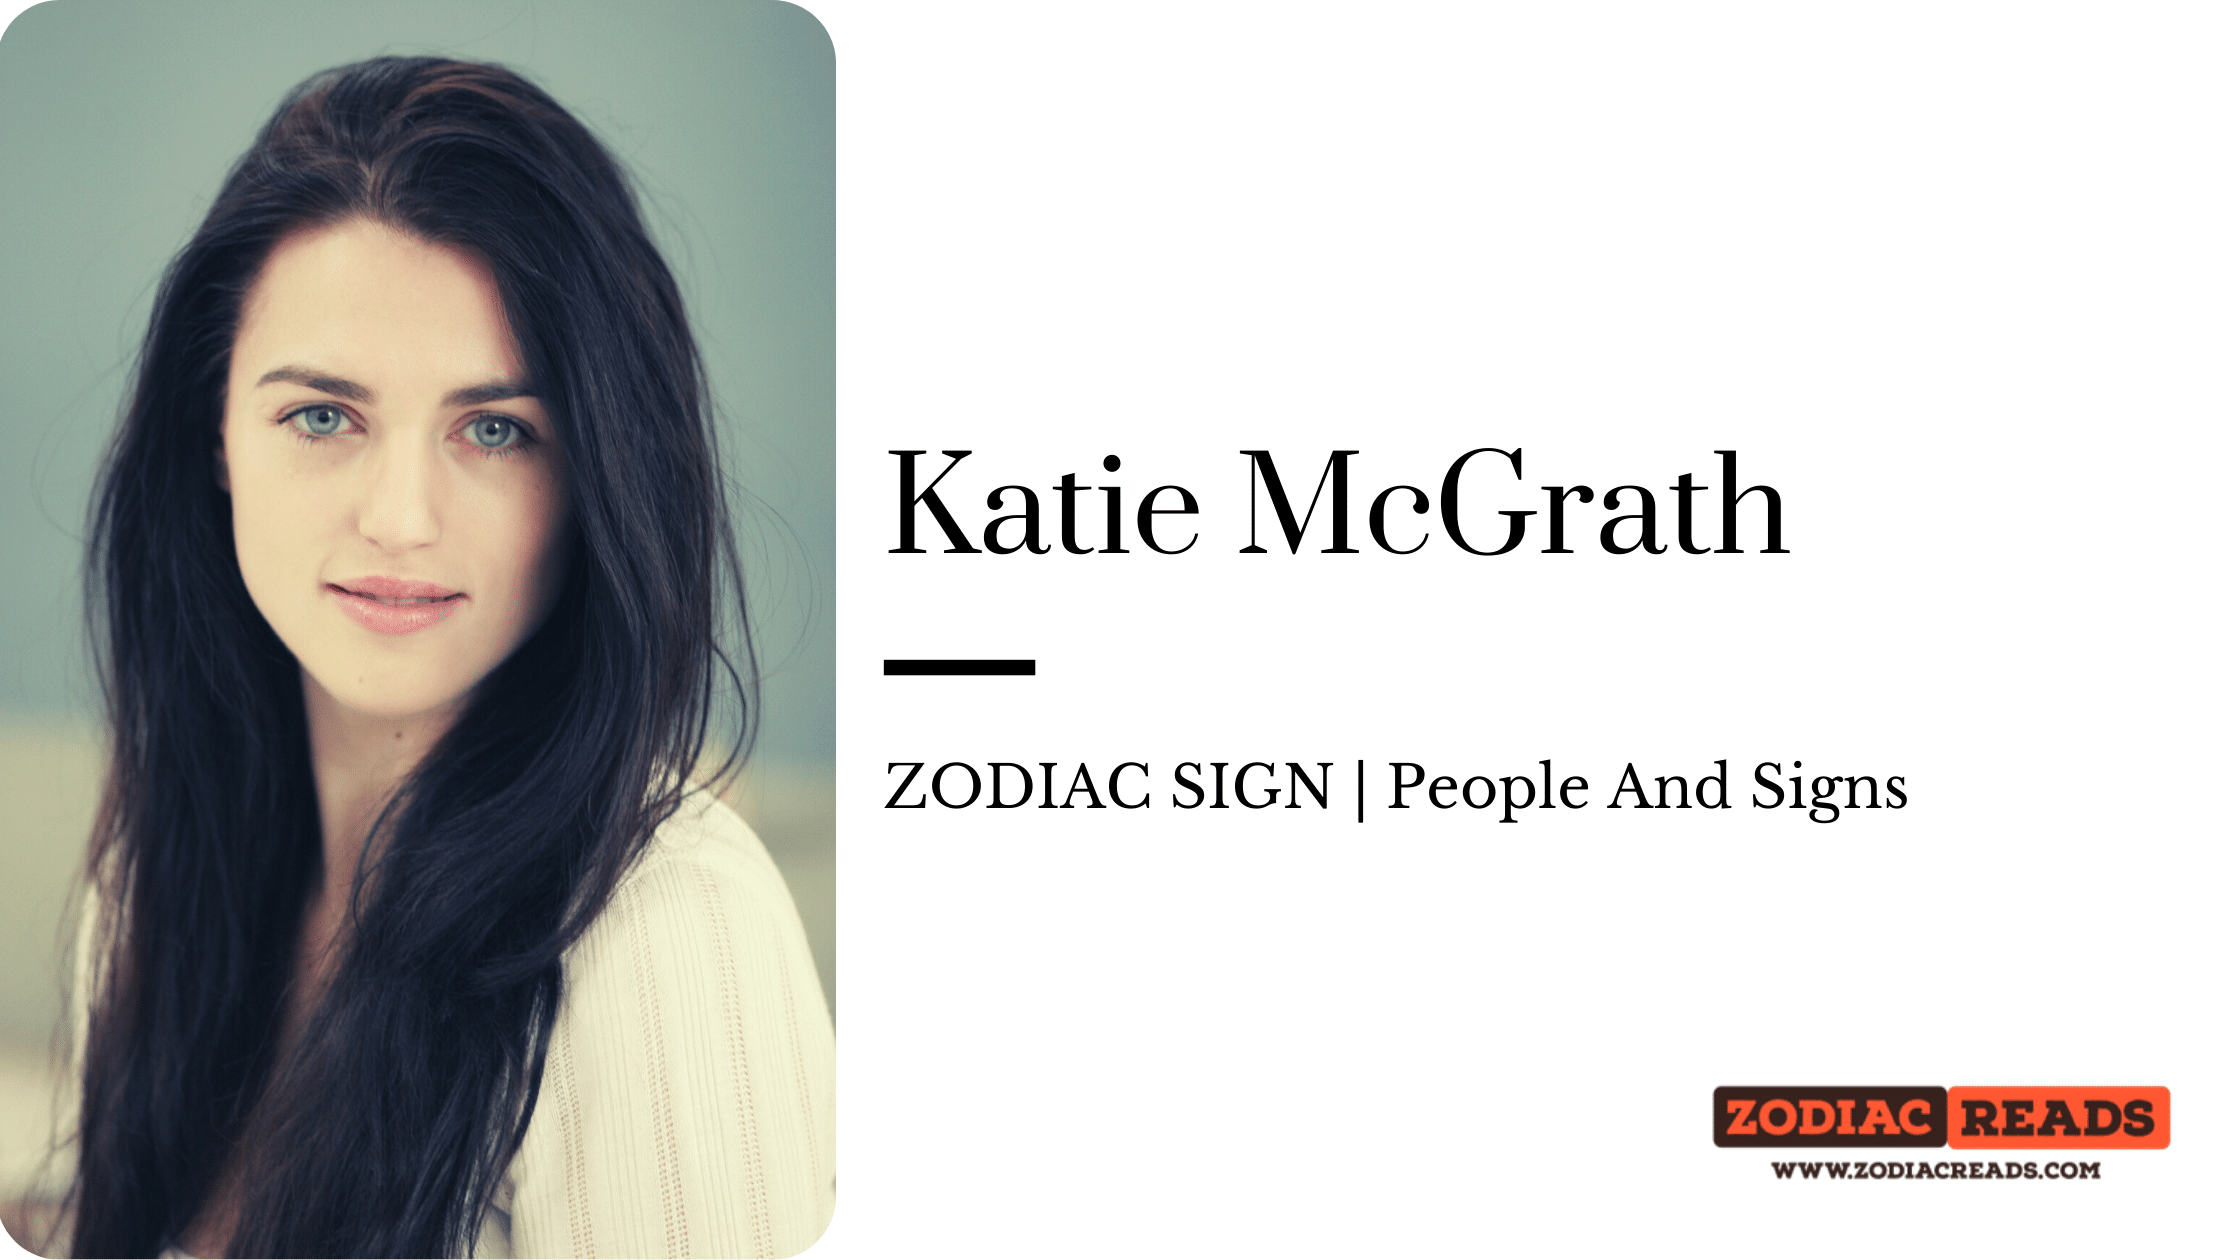 Katie McGrath zodiac